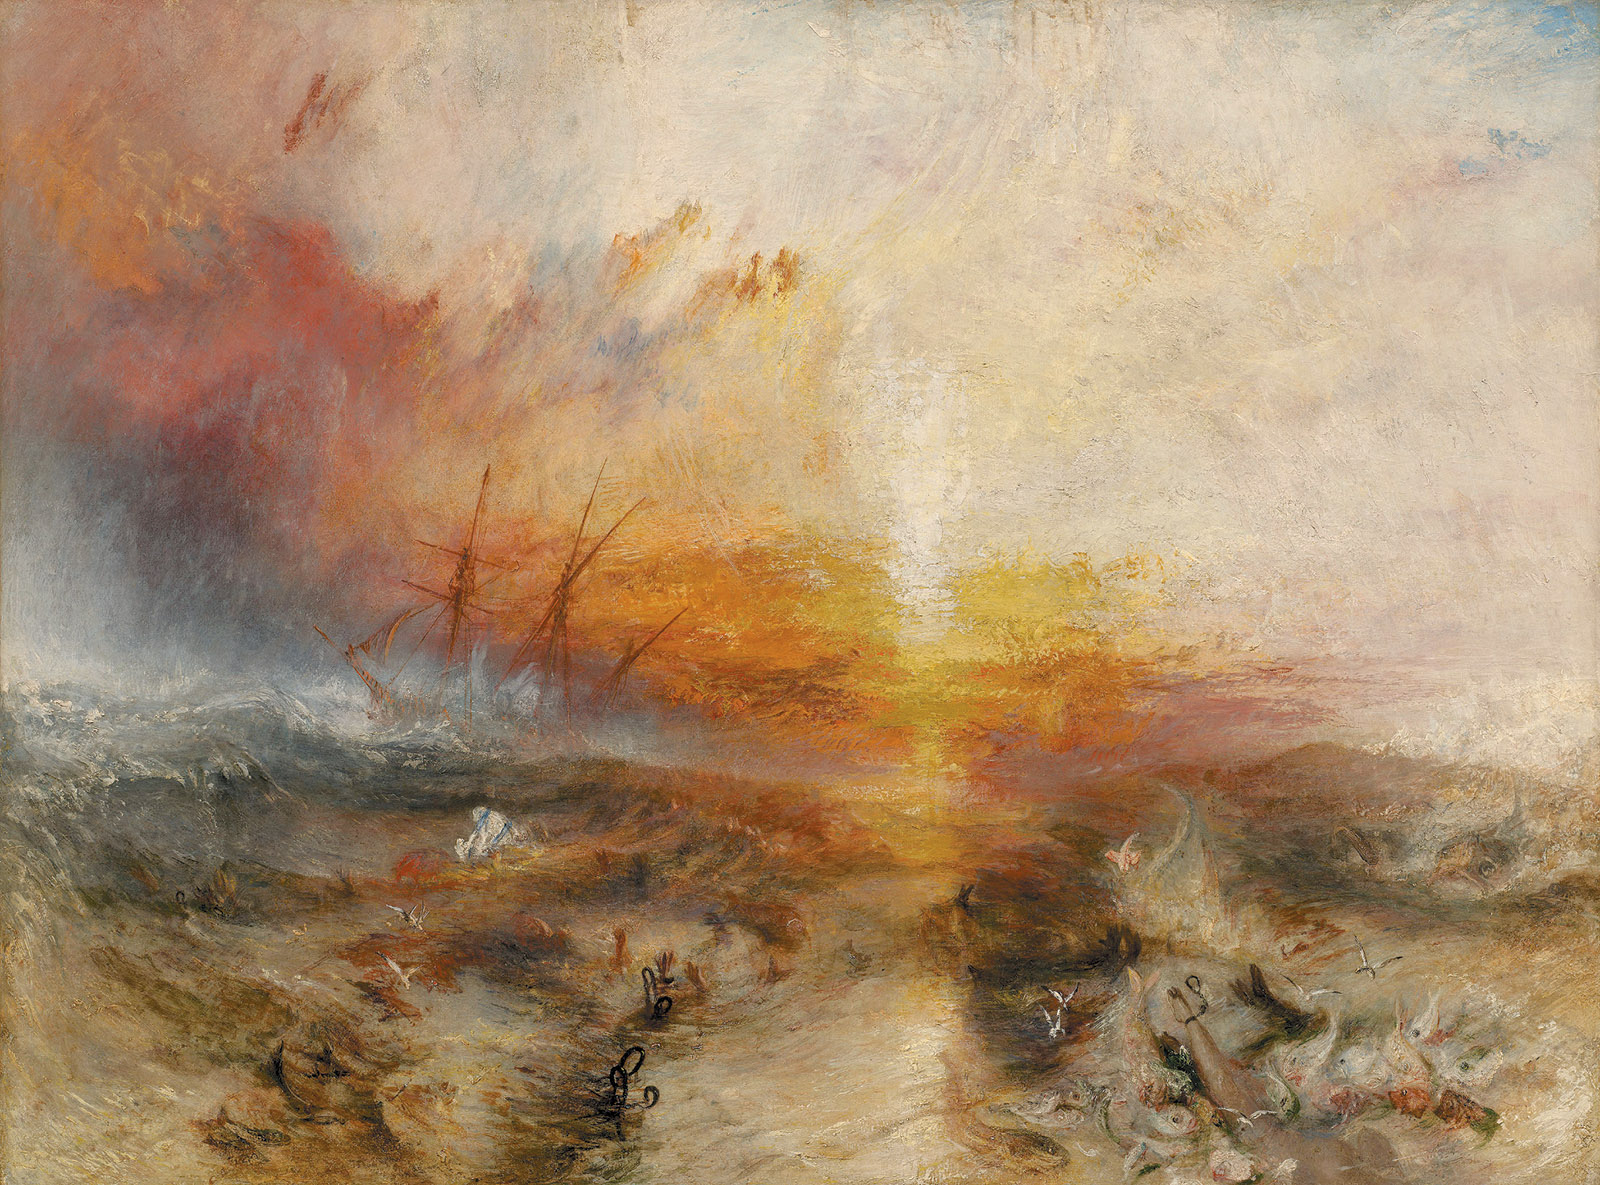 J.M.W. Turner: Slave Ship, 1840